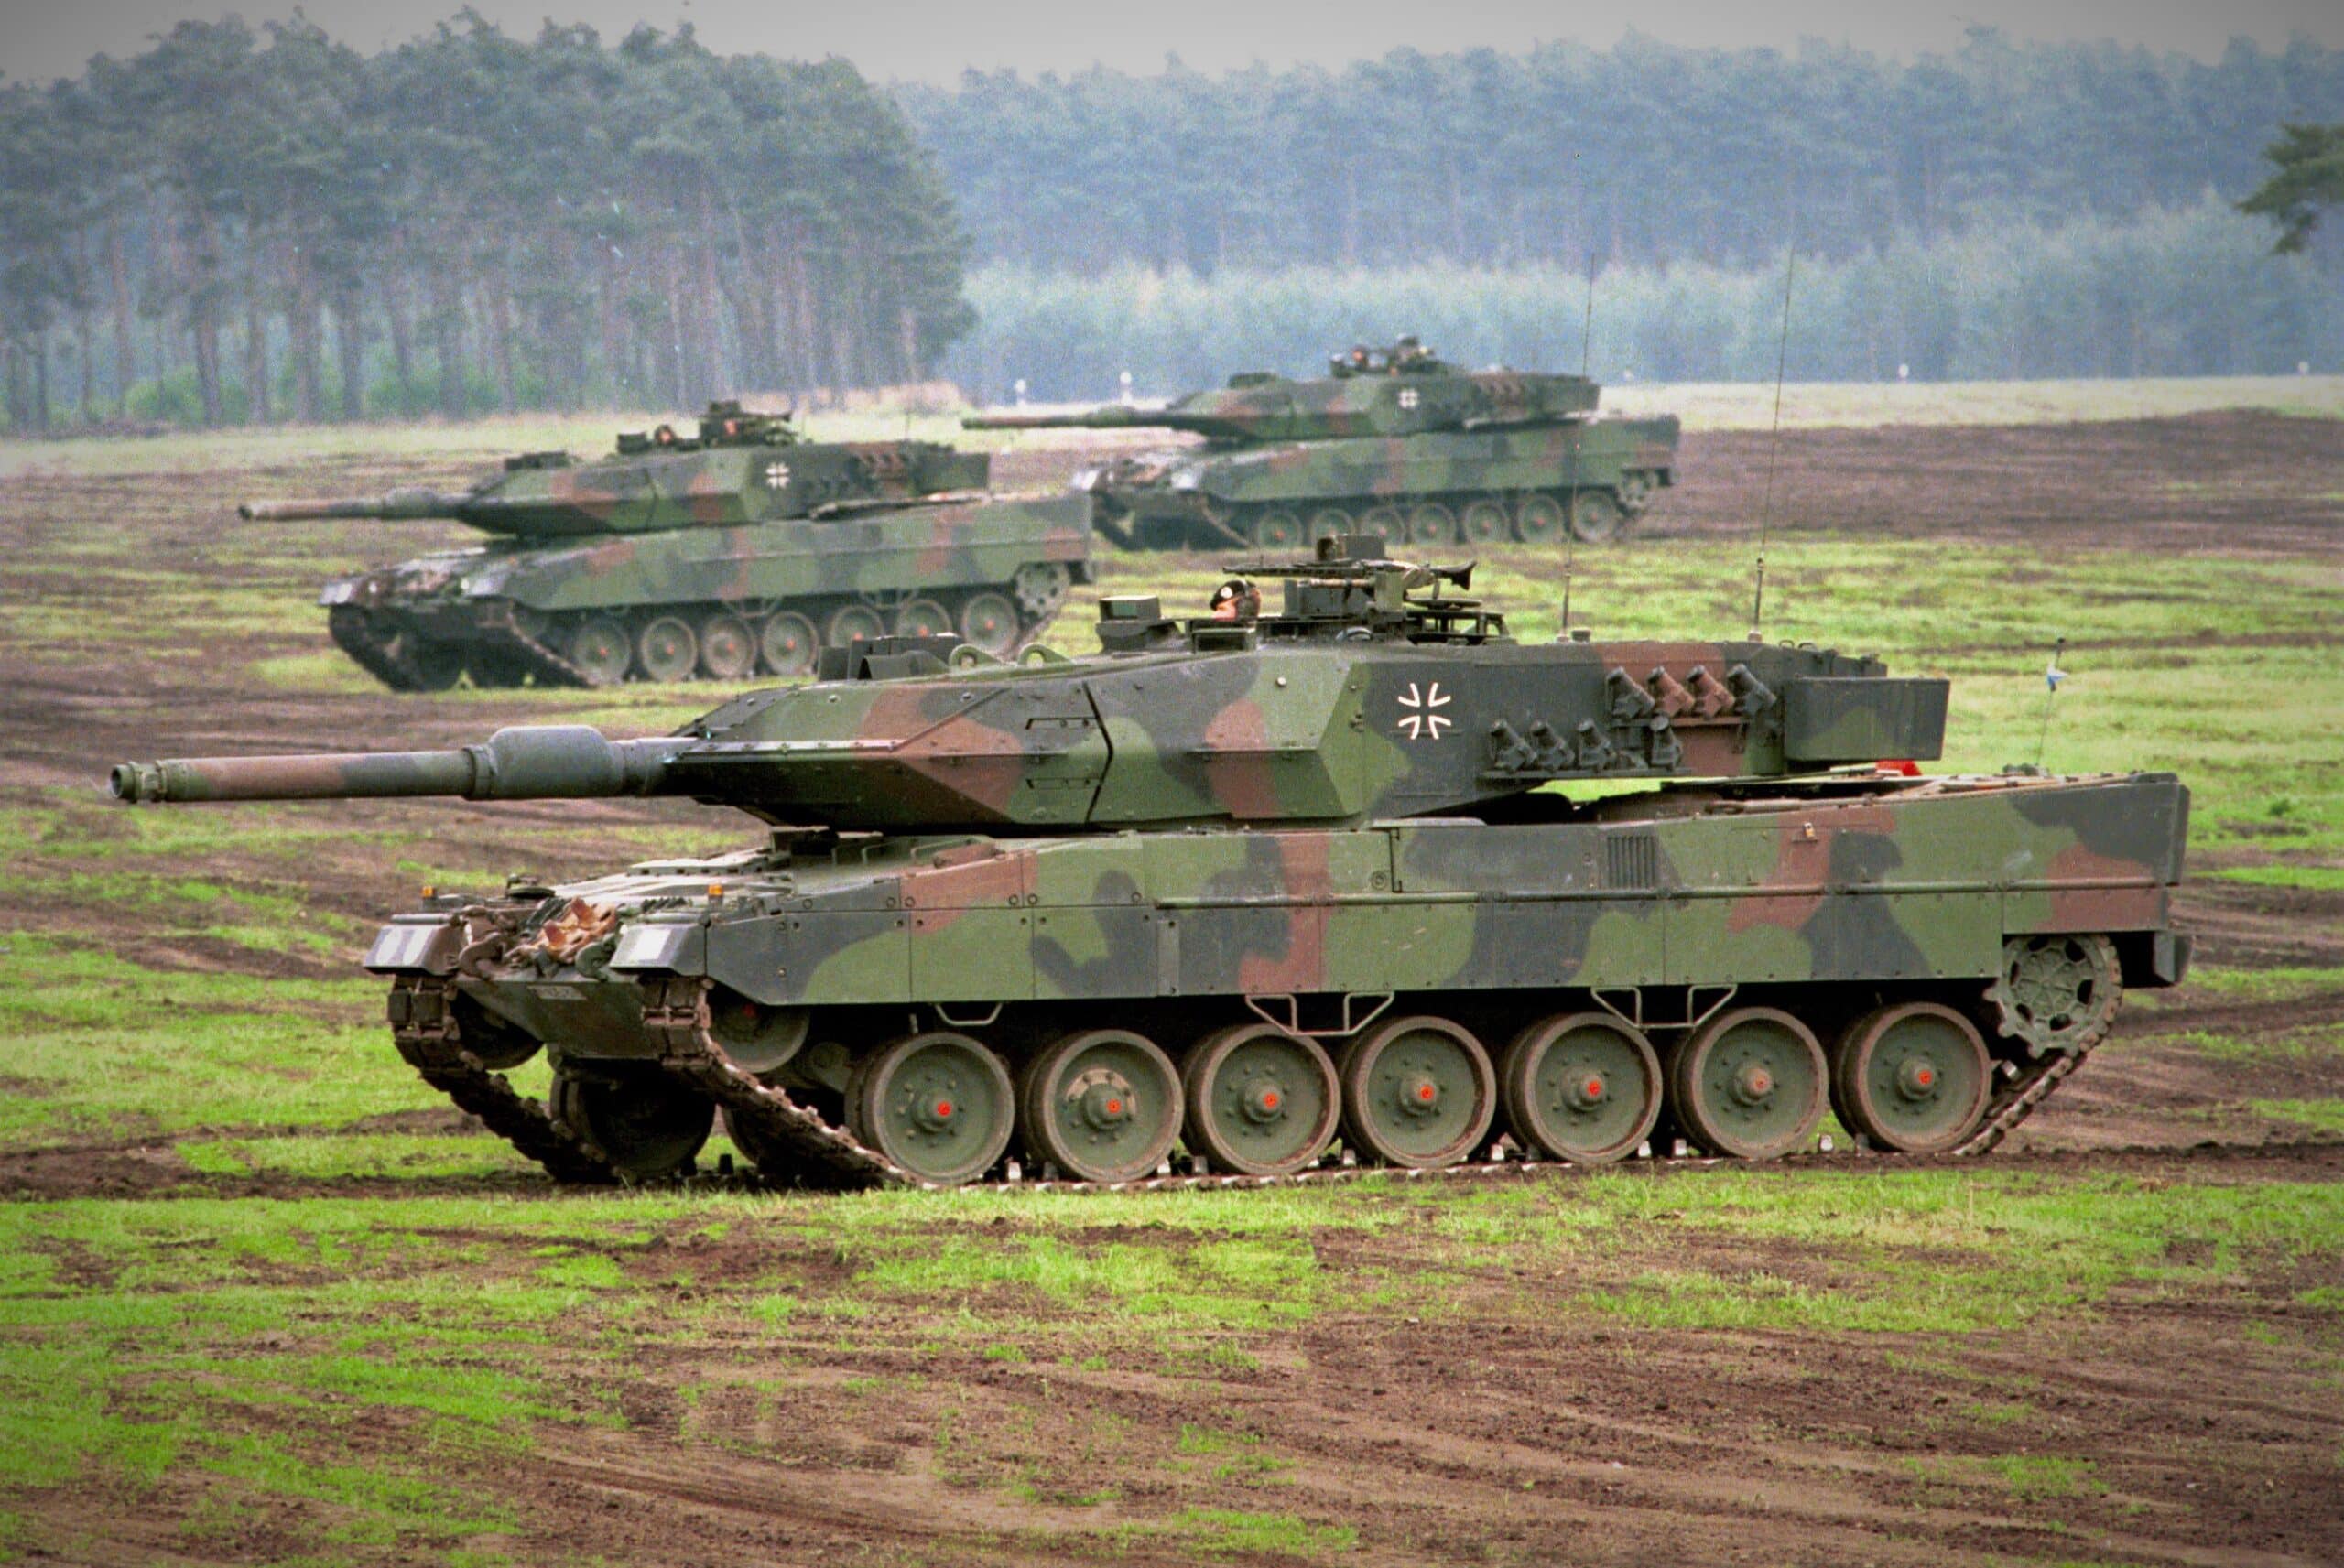 ما هي الدول التي يمكنها تزويد أوكرانيا بدبابات Leopard 2 ولماذا؟